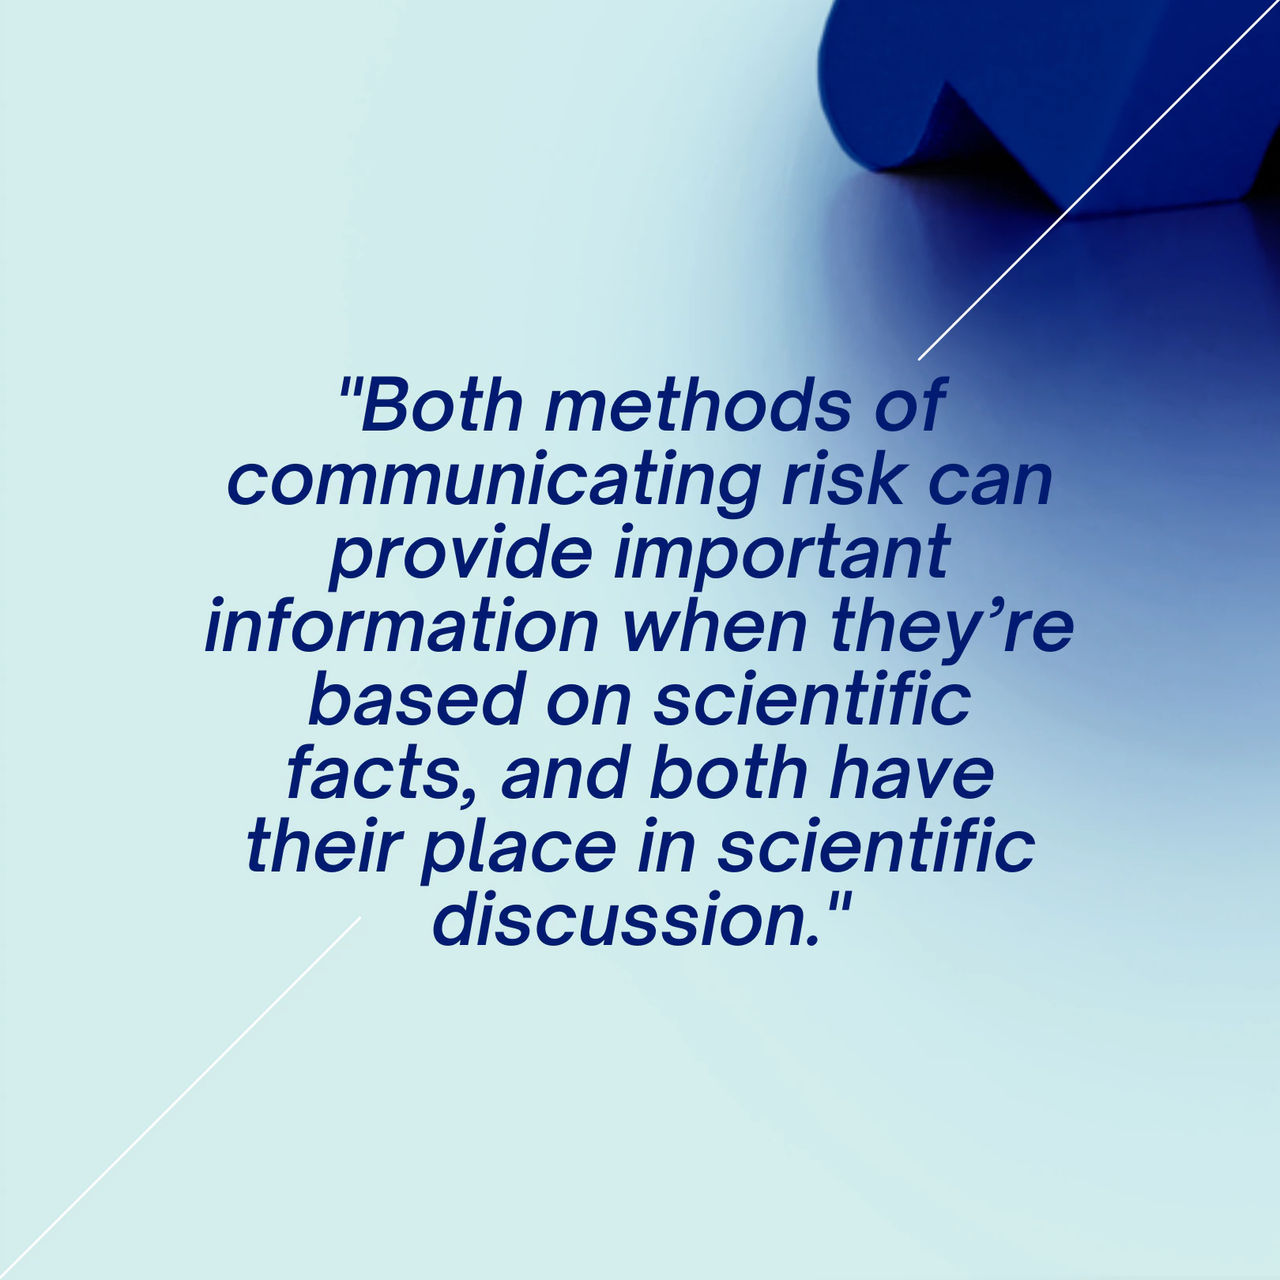 Оба метода информирования о риске могут предоставить важную информацию, они основаны на научных фактах.